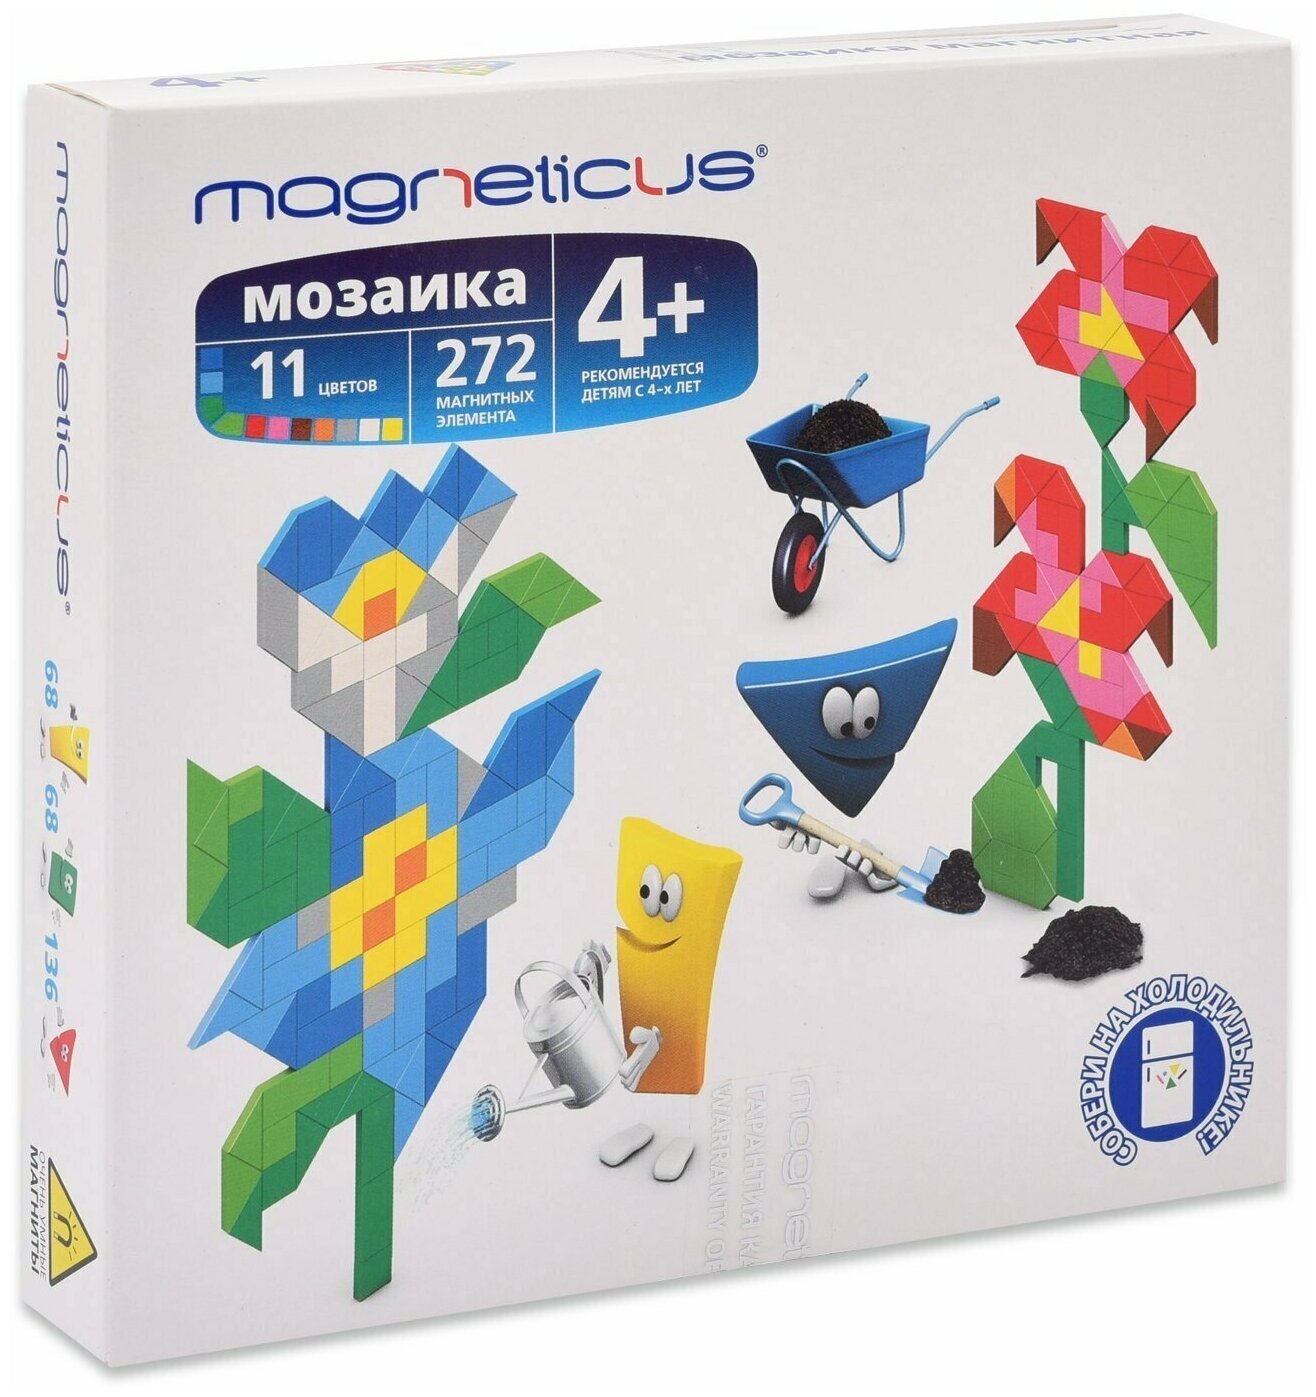 Магнитная Мозаика "Цветы" 272 элемента, 11 цветов Magneticus MM-012